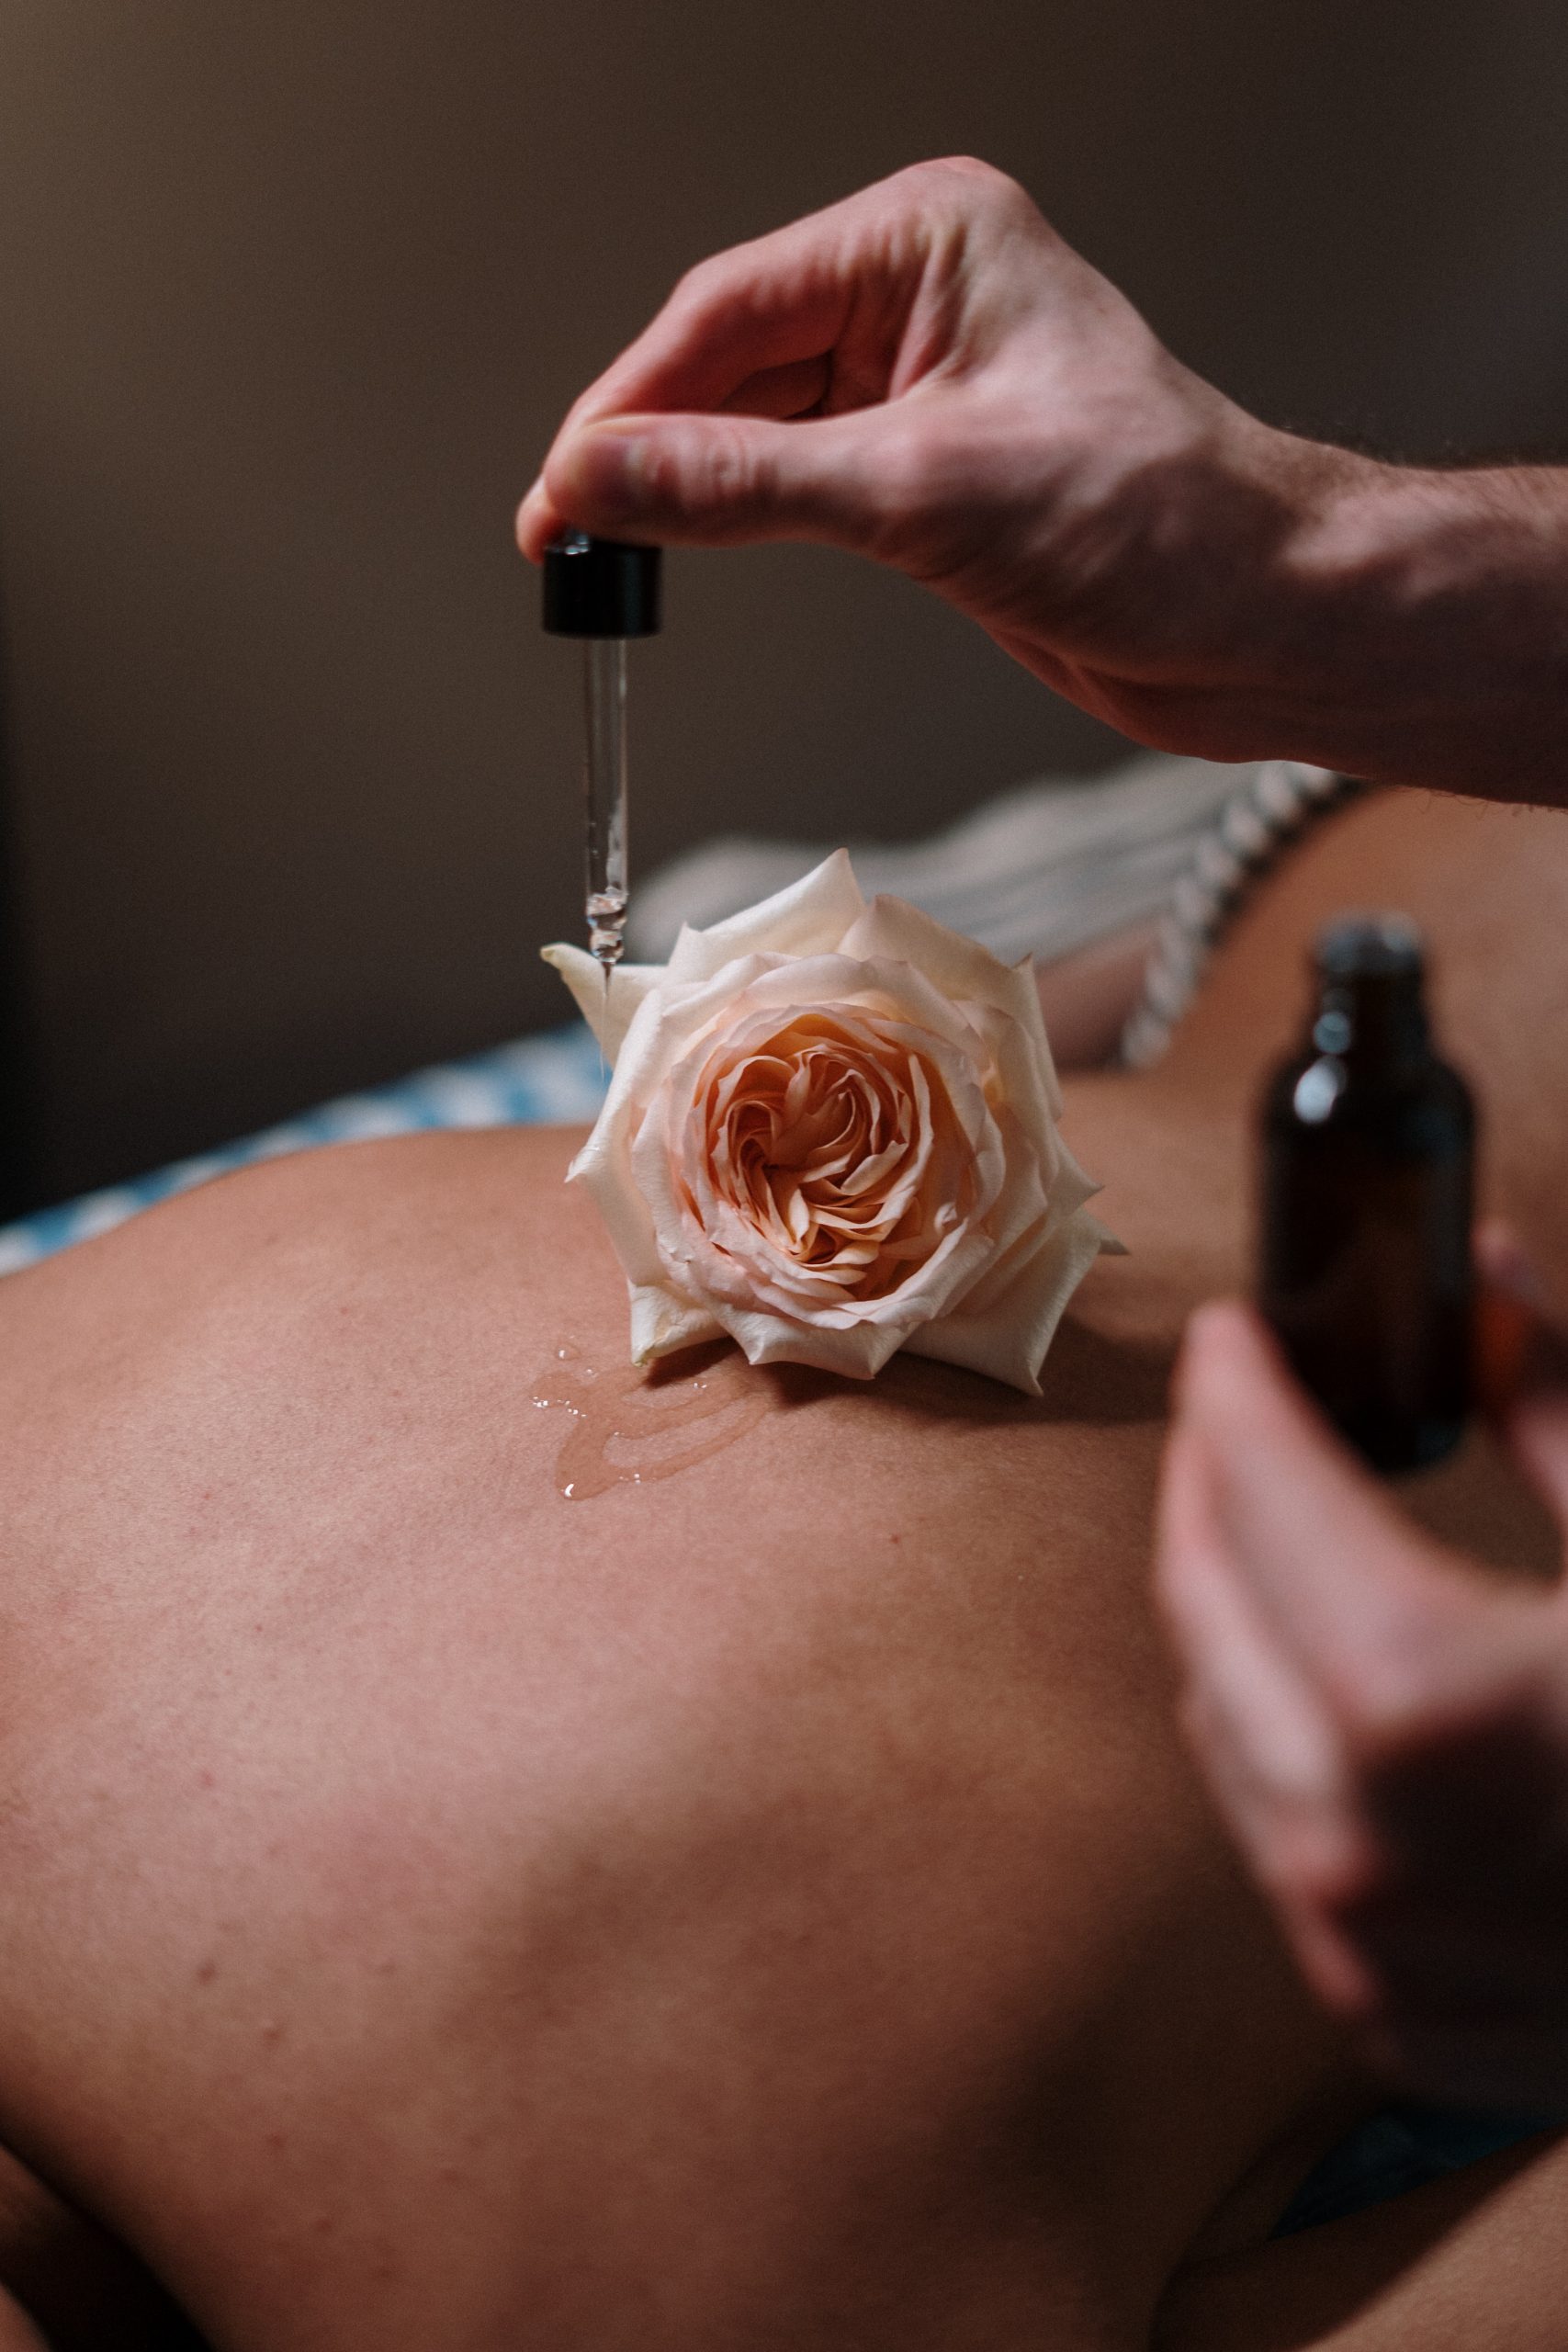 huile qui coule sur le dos d'une femme
massages ayurvédiques
massage prénatal
massage postnatal
massage pour les femmes
massage à domicile